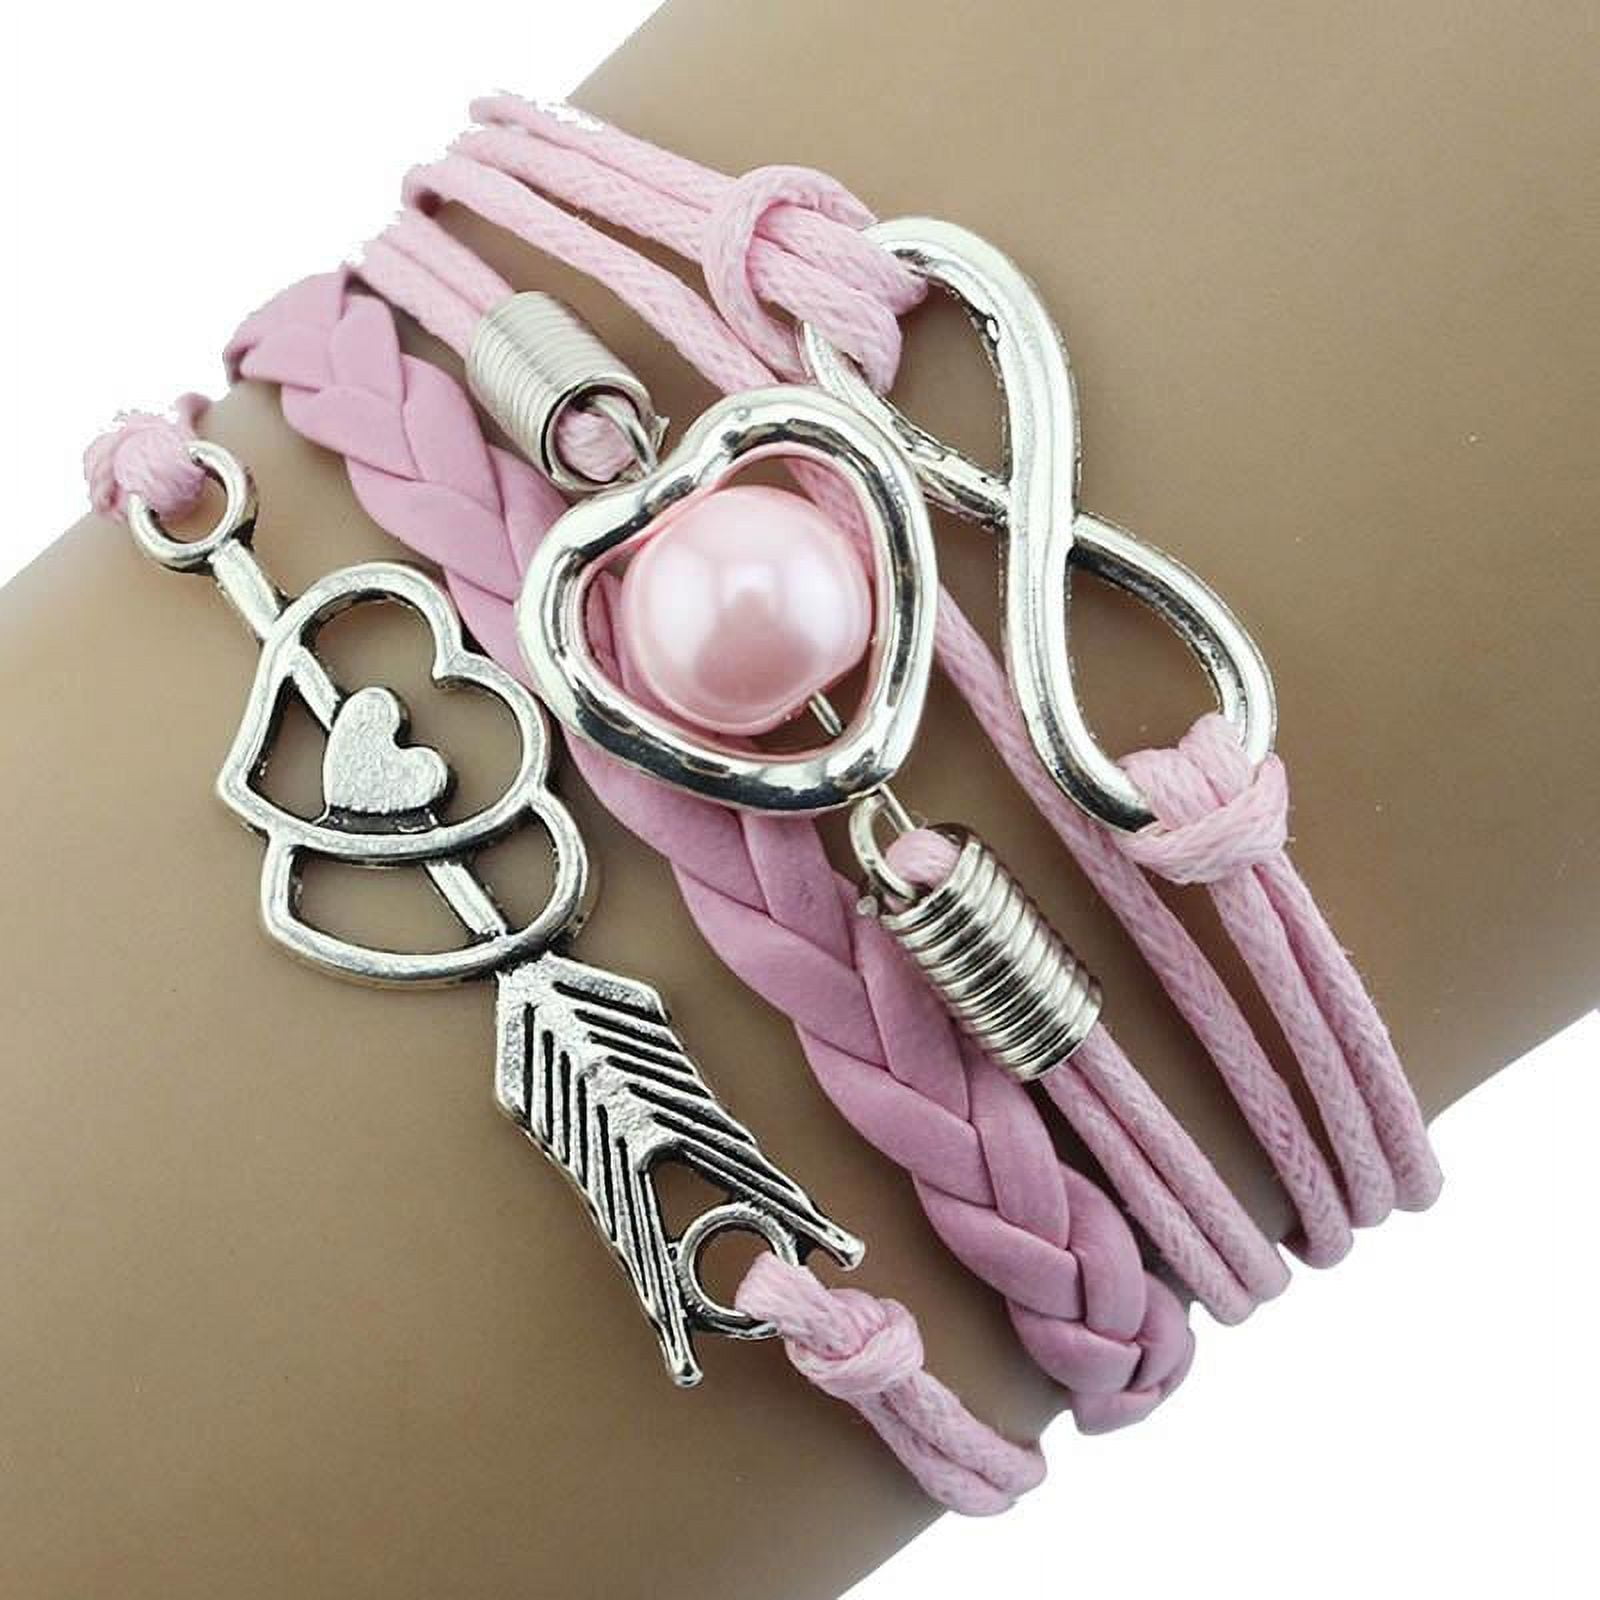 Amazon.com: YWMAN 2PCS Baseball Leather Bracelets - Baseball Fans Athletes  Bangle Cuff Wristband - Adjustable Commemorative Braided Bracelets for Girls  boys: Clothing, Shoes & Jewelry